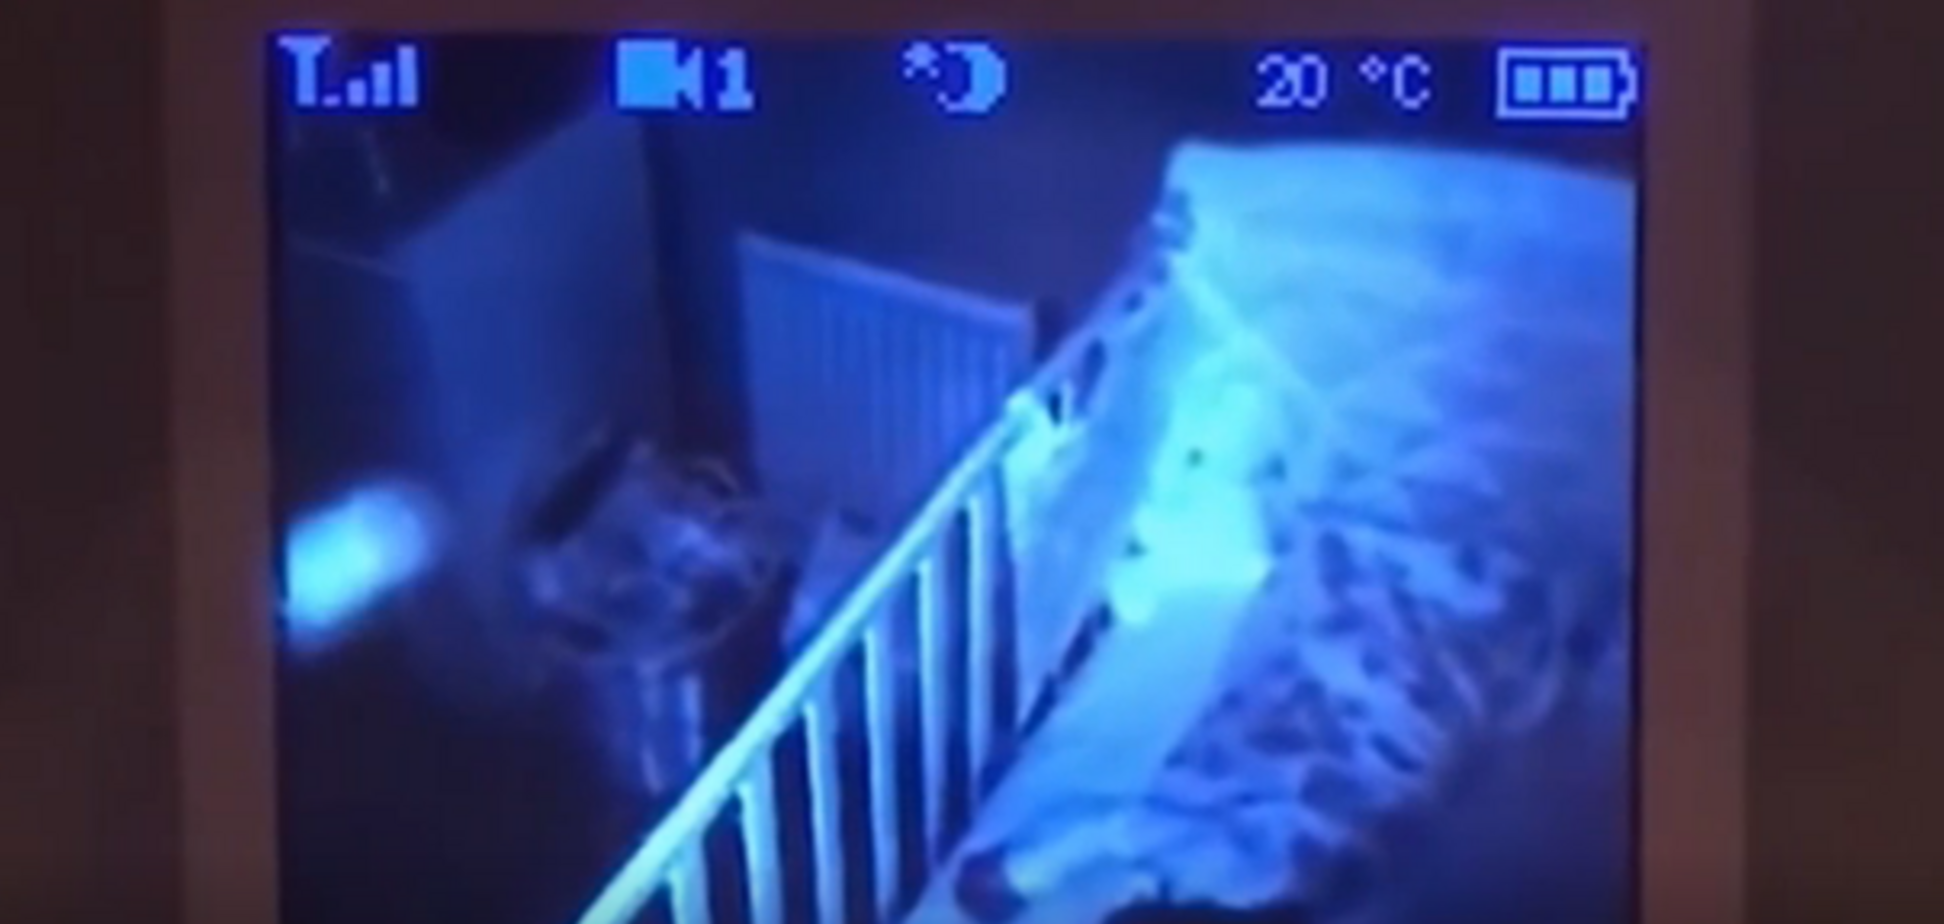 ''Це було моторошно'': в Англії відеоняня у кімнаті дитини зафіксувала страшний об'єкт